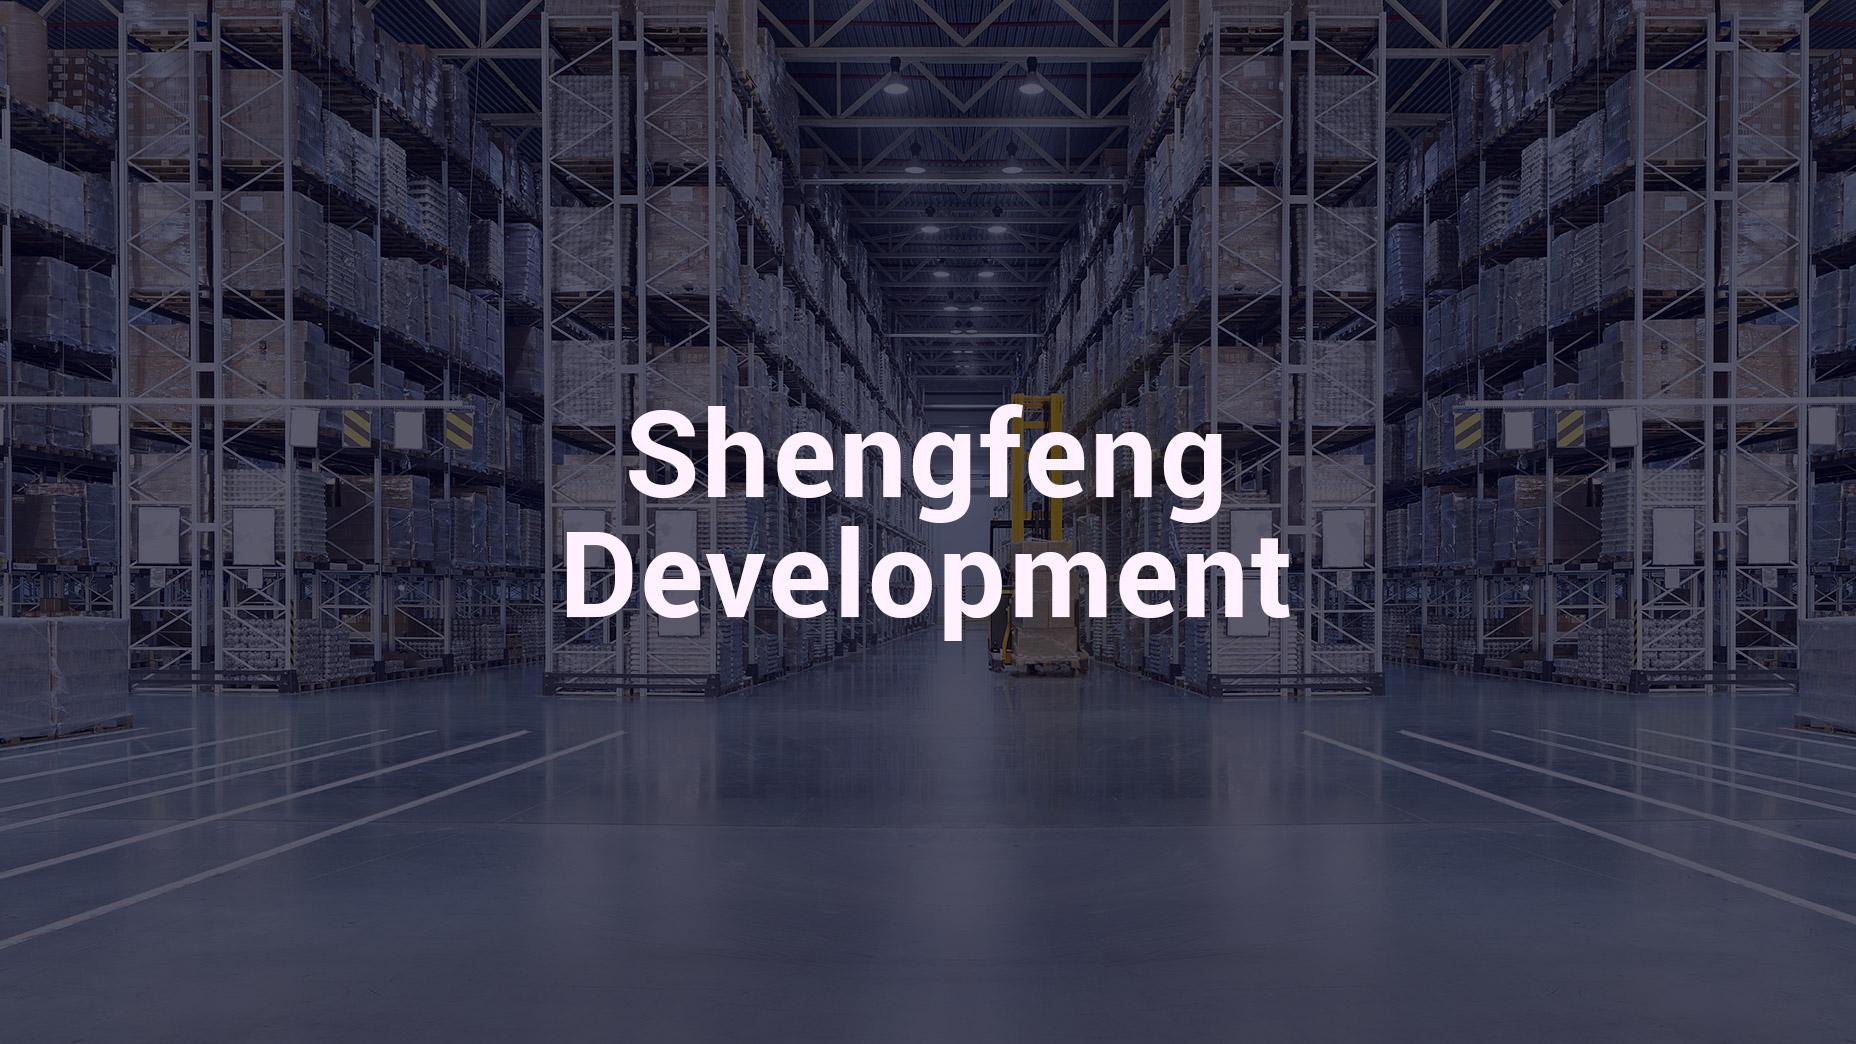 IPO của Shengfeng Development: Nhà cung cấp dịch vụ hậu cần theo hợp đồng tại Trung Quốc